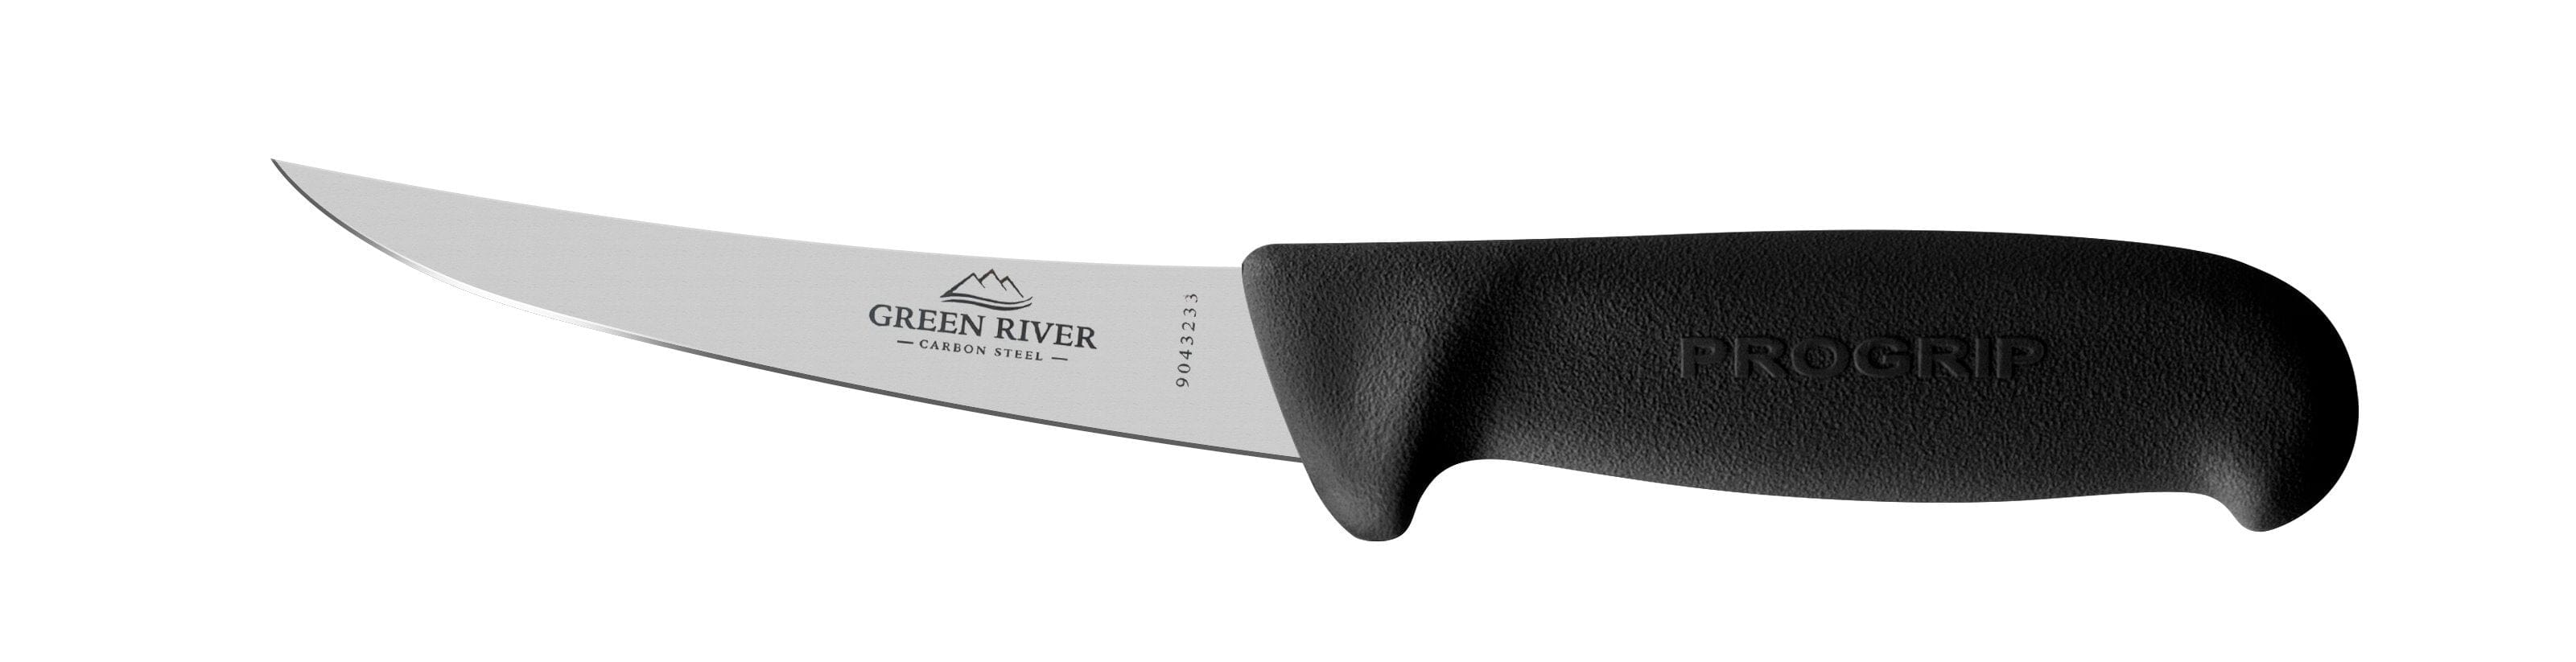 Green River Boning Knife 15cm Curved  #700